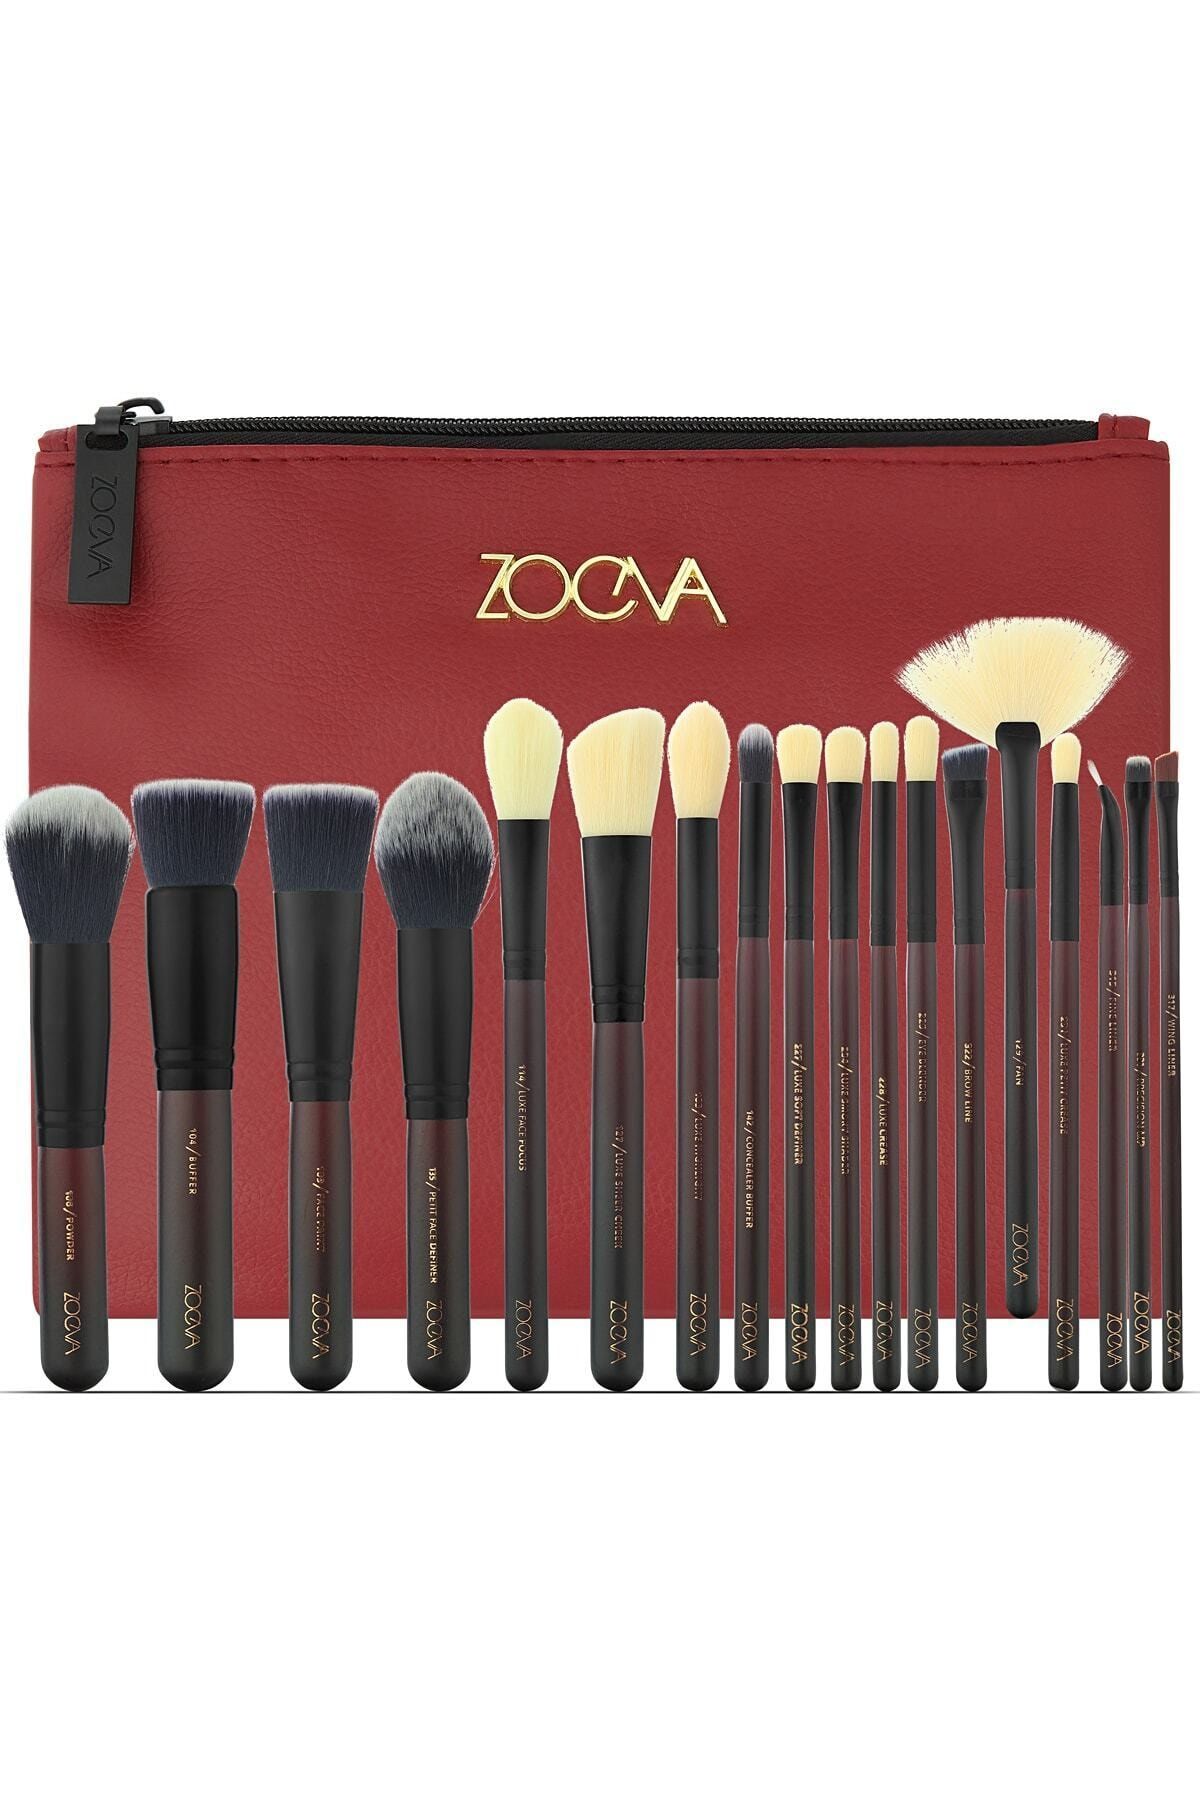 Zoeva 18 Pcs Brush Set & Bag - 18'li Fırça Seti & Çanta